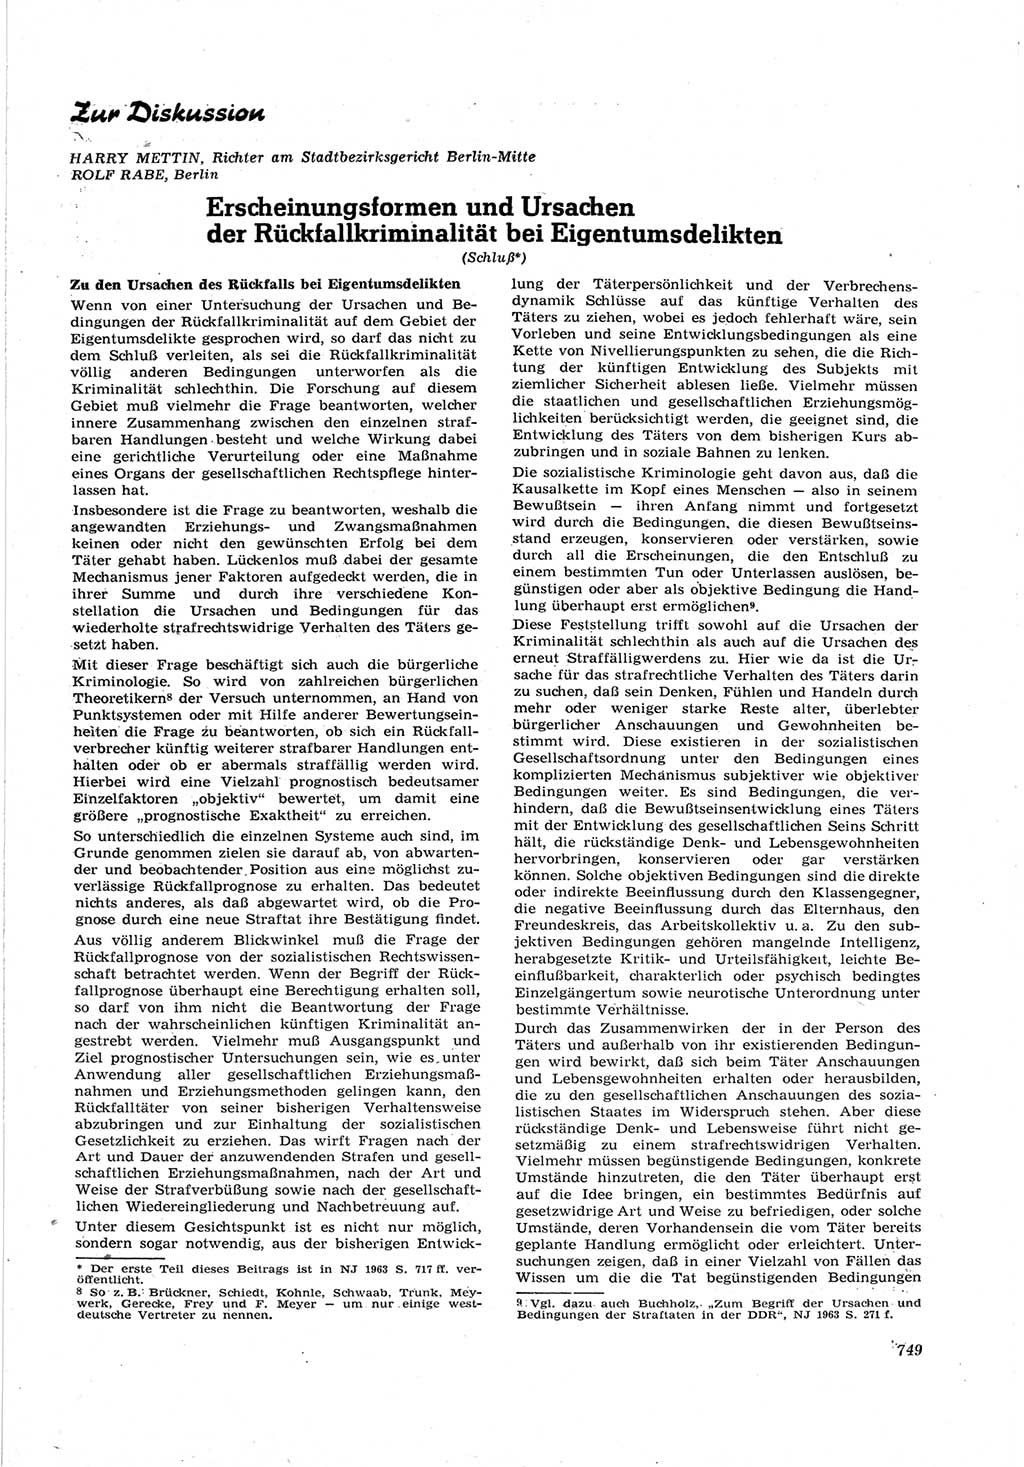 Neue Justiz (NJ), Zeitschrift für Recht und Rechtswissenschaft [Deutsche Demokratische Republik (DDR)], 17. Jahrgang 1963, Seite 749 (NJ DDR 1963, S. 749)